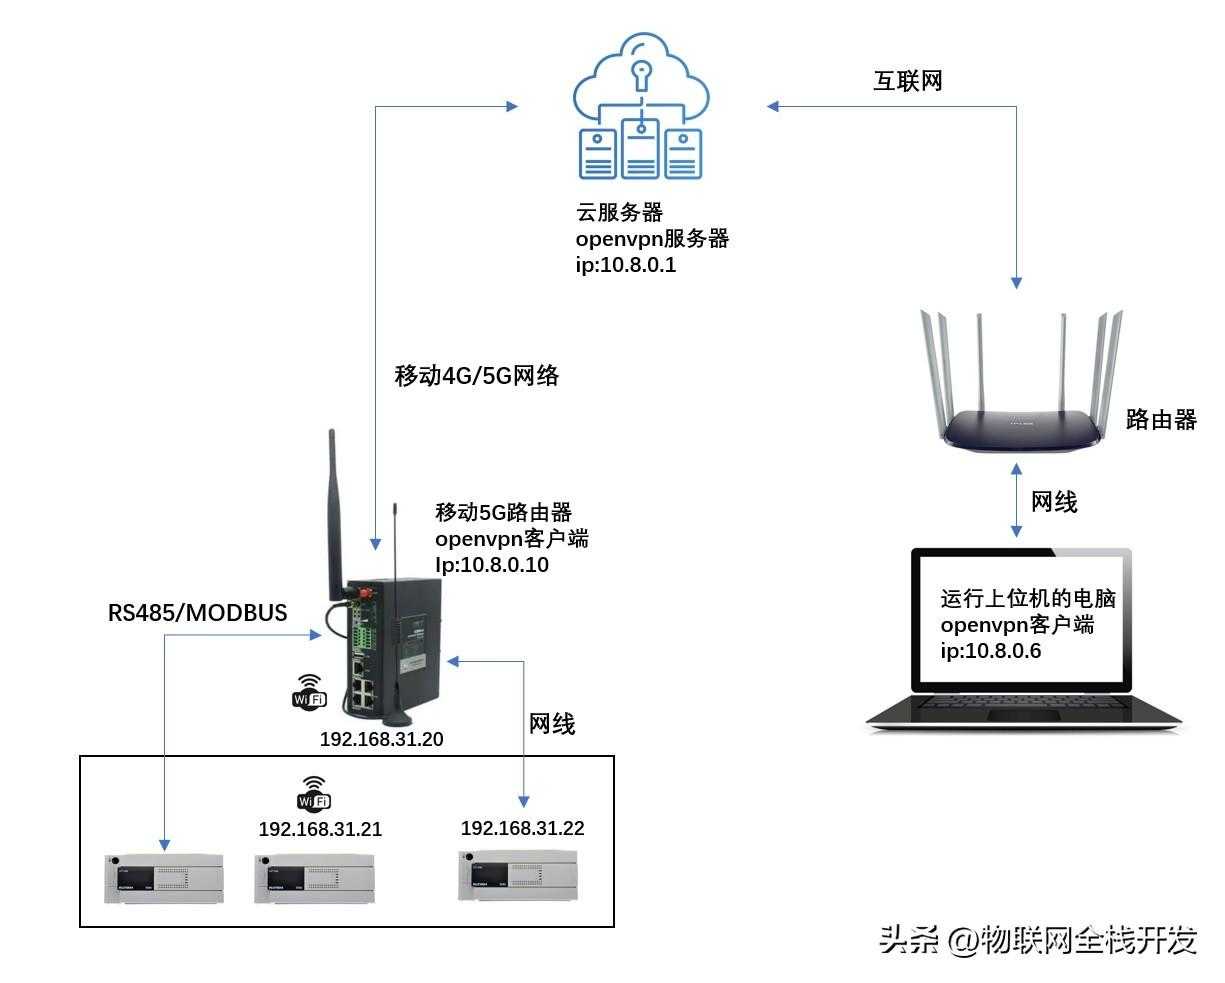 【技术】5G路由器和电脑的远程物联网控制方法